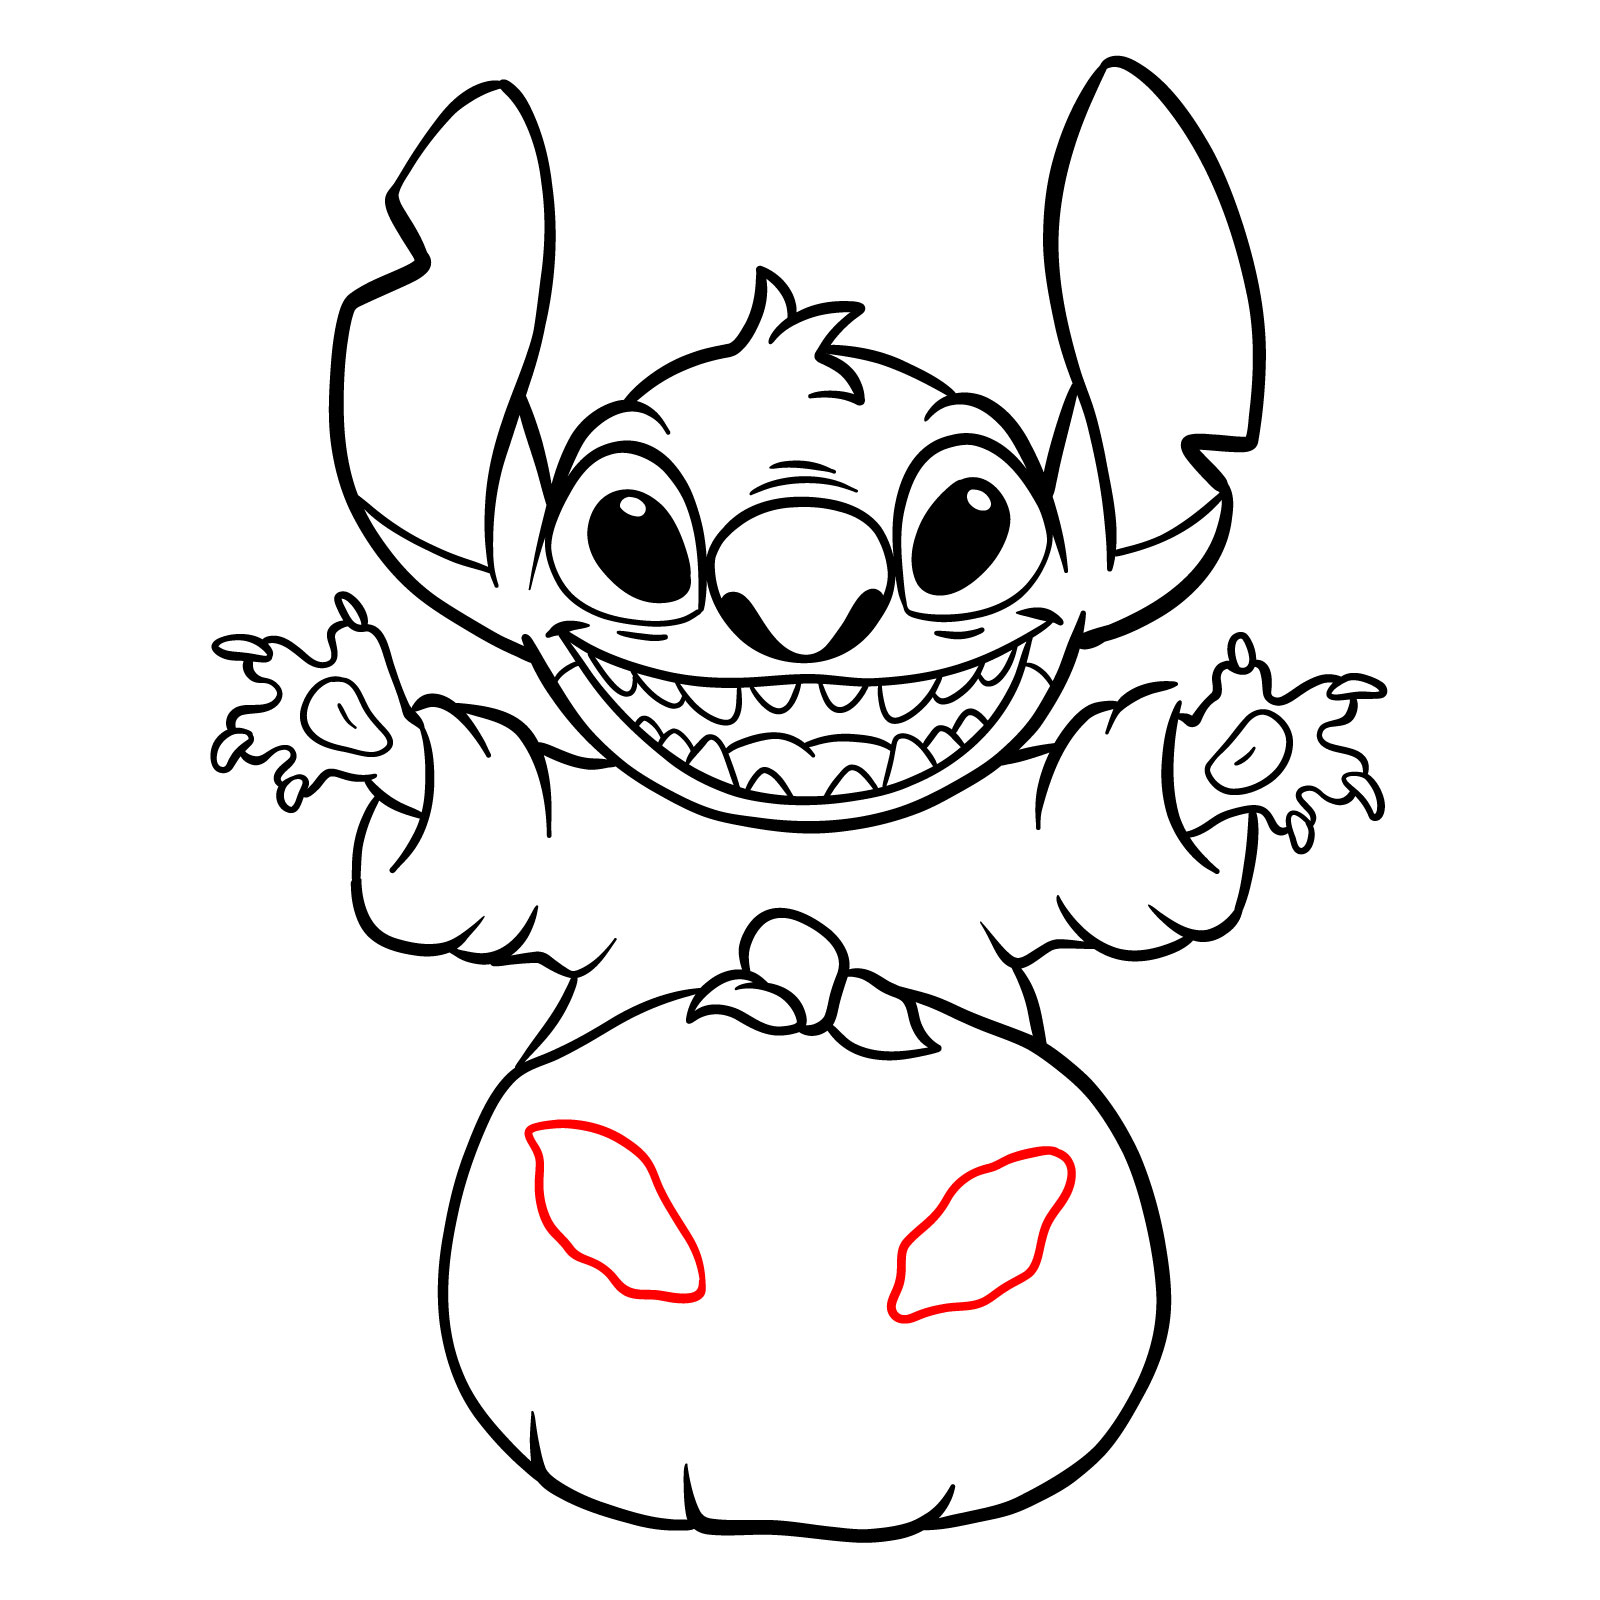 How to Draw Halloween Stitch with a jack-o'-lantern - step 24